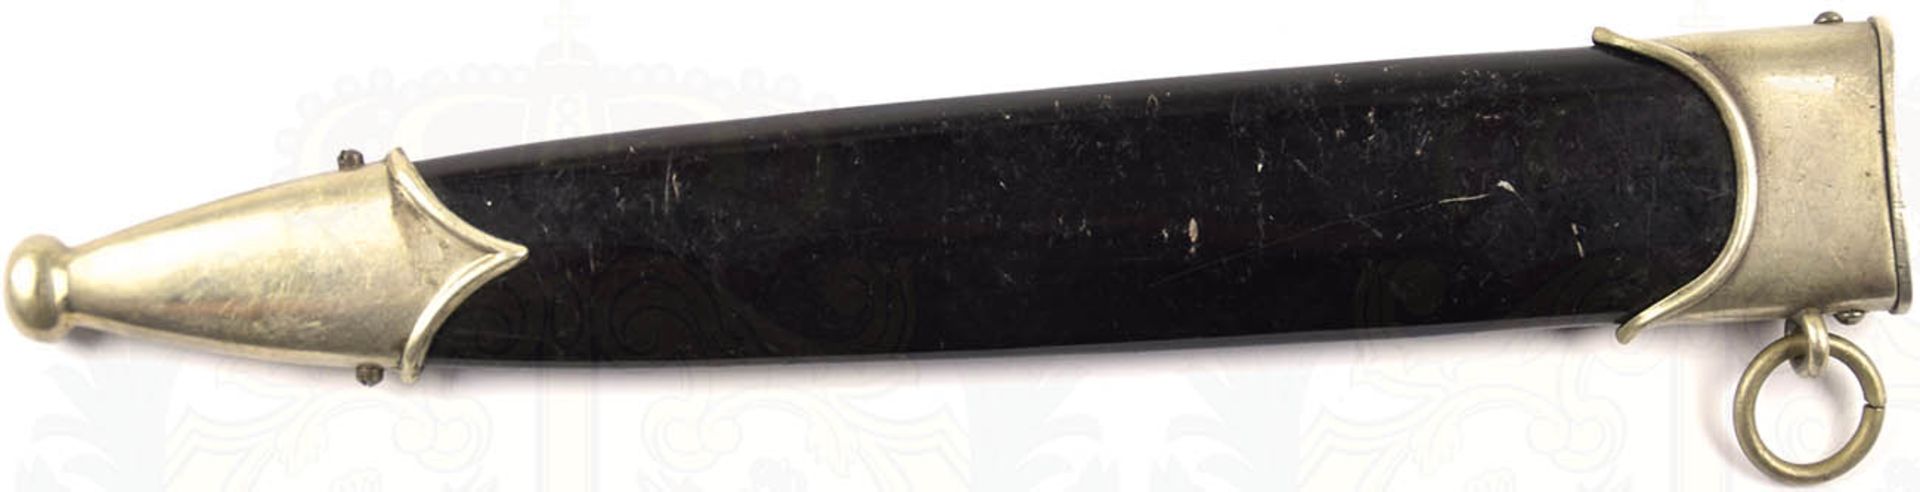 SCHEIDE FÜR DEN DIENSTDOLCH M 33, Stahlblech, glänzend schwarz lackiert, Beschläge Tombak